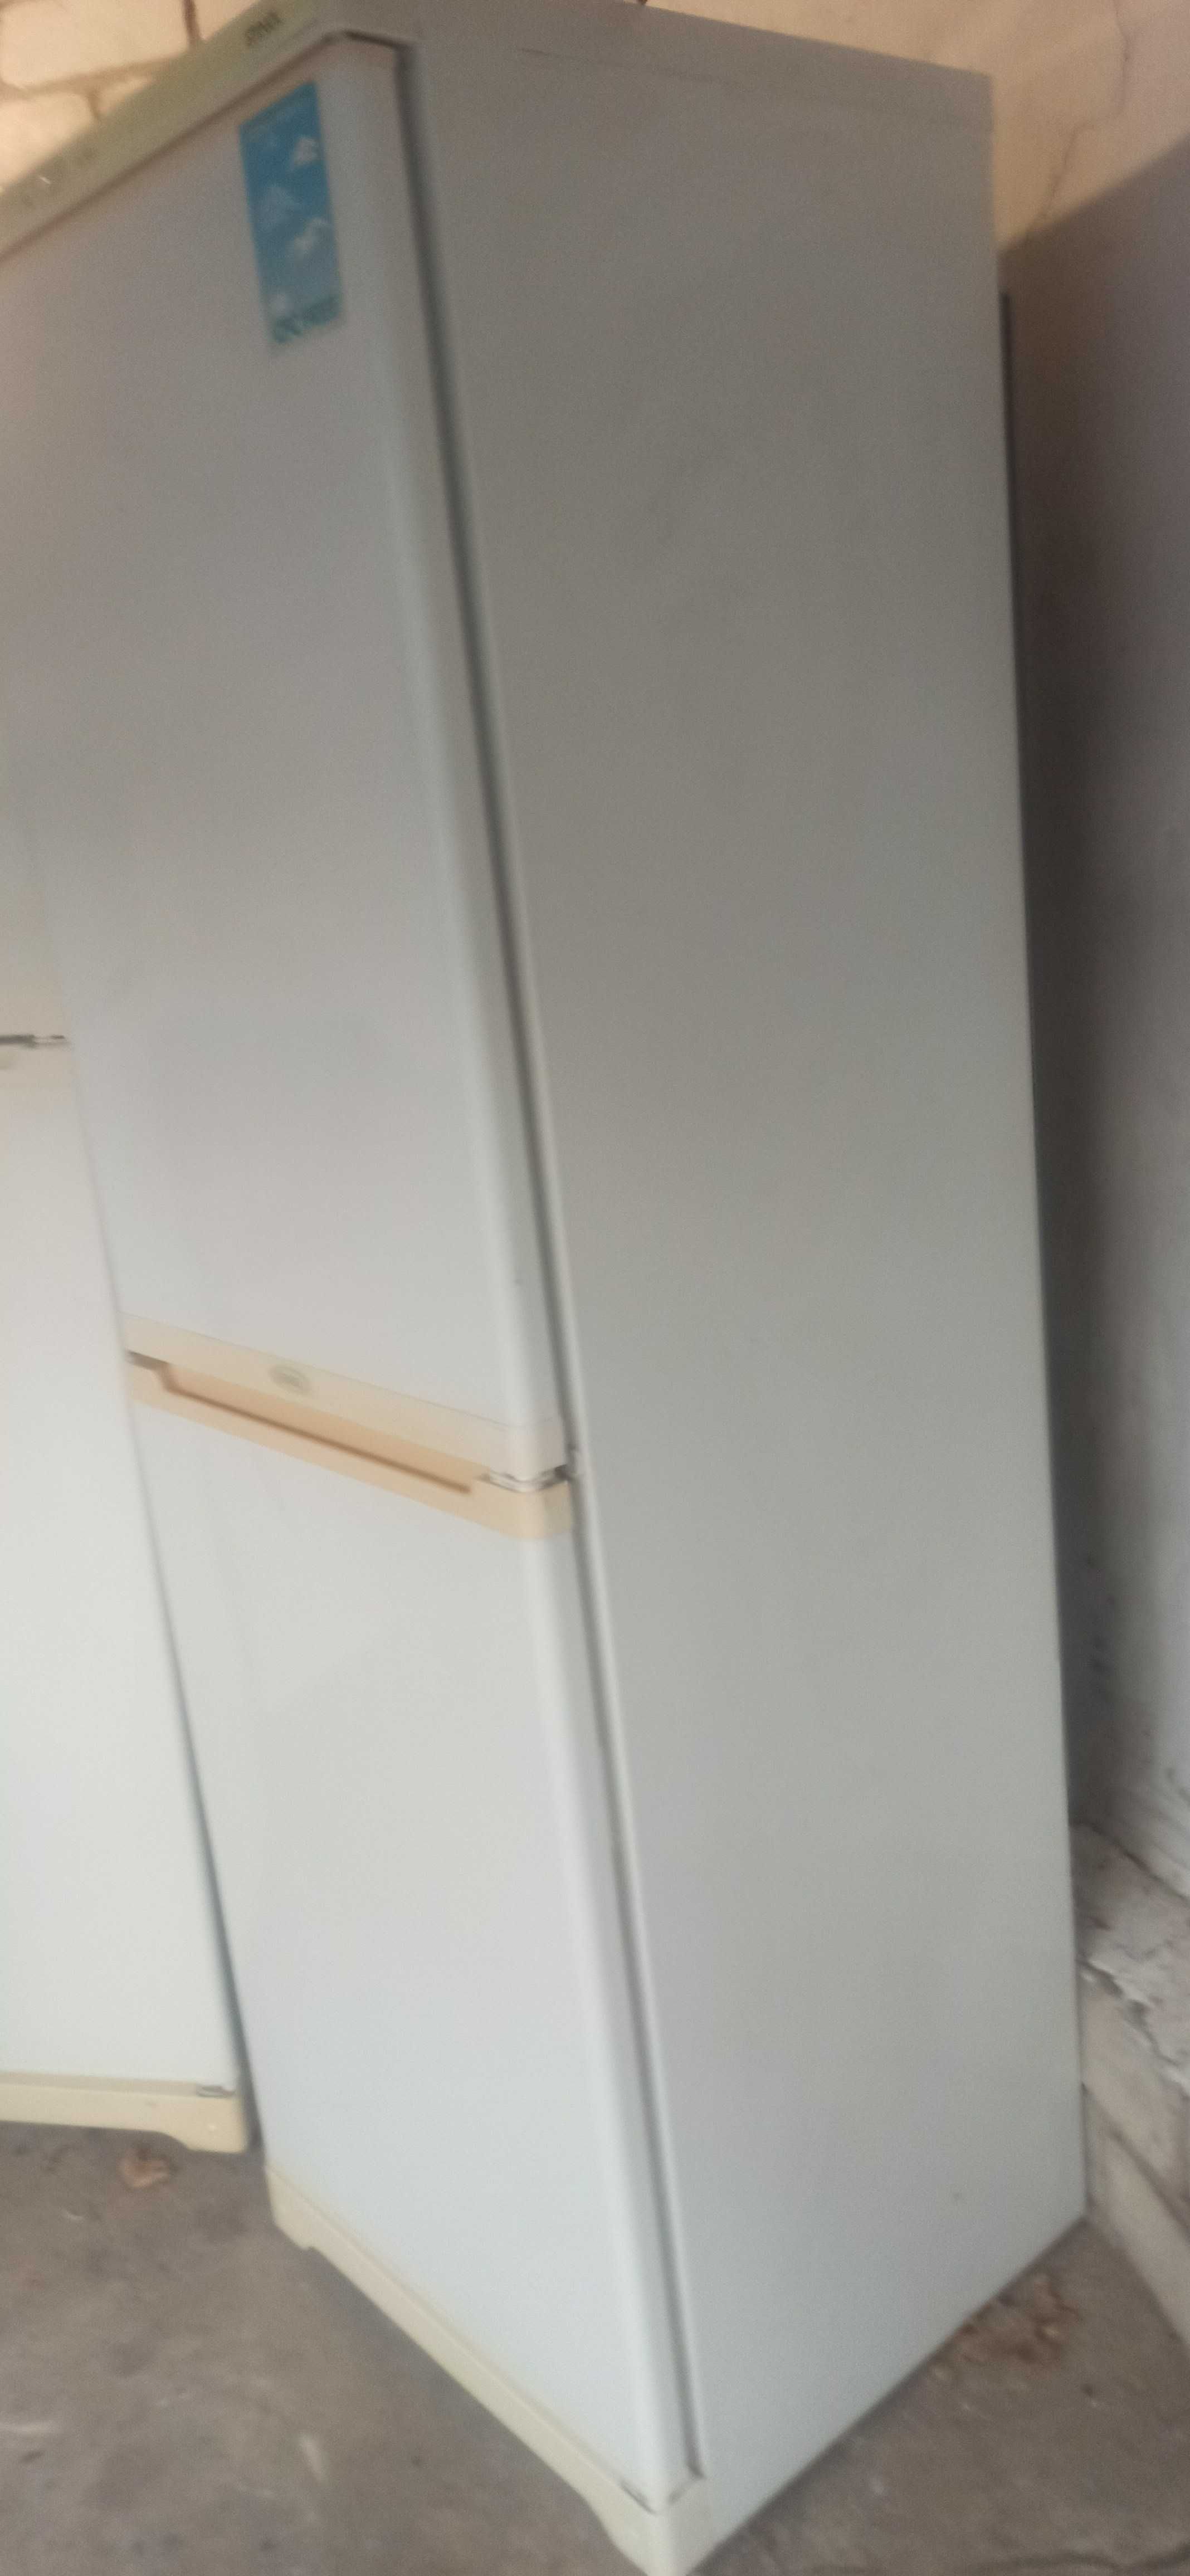 Двухкомпрессорный холодильник Стинол 184 см в хорошем состоянии